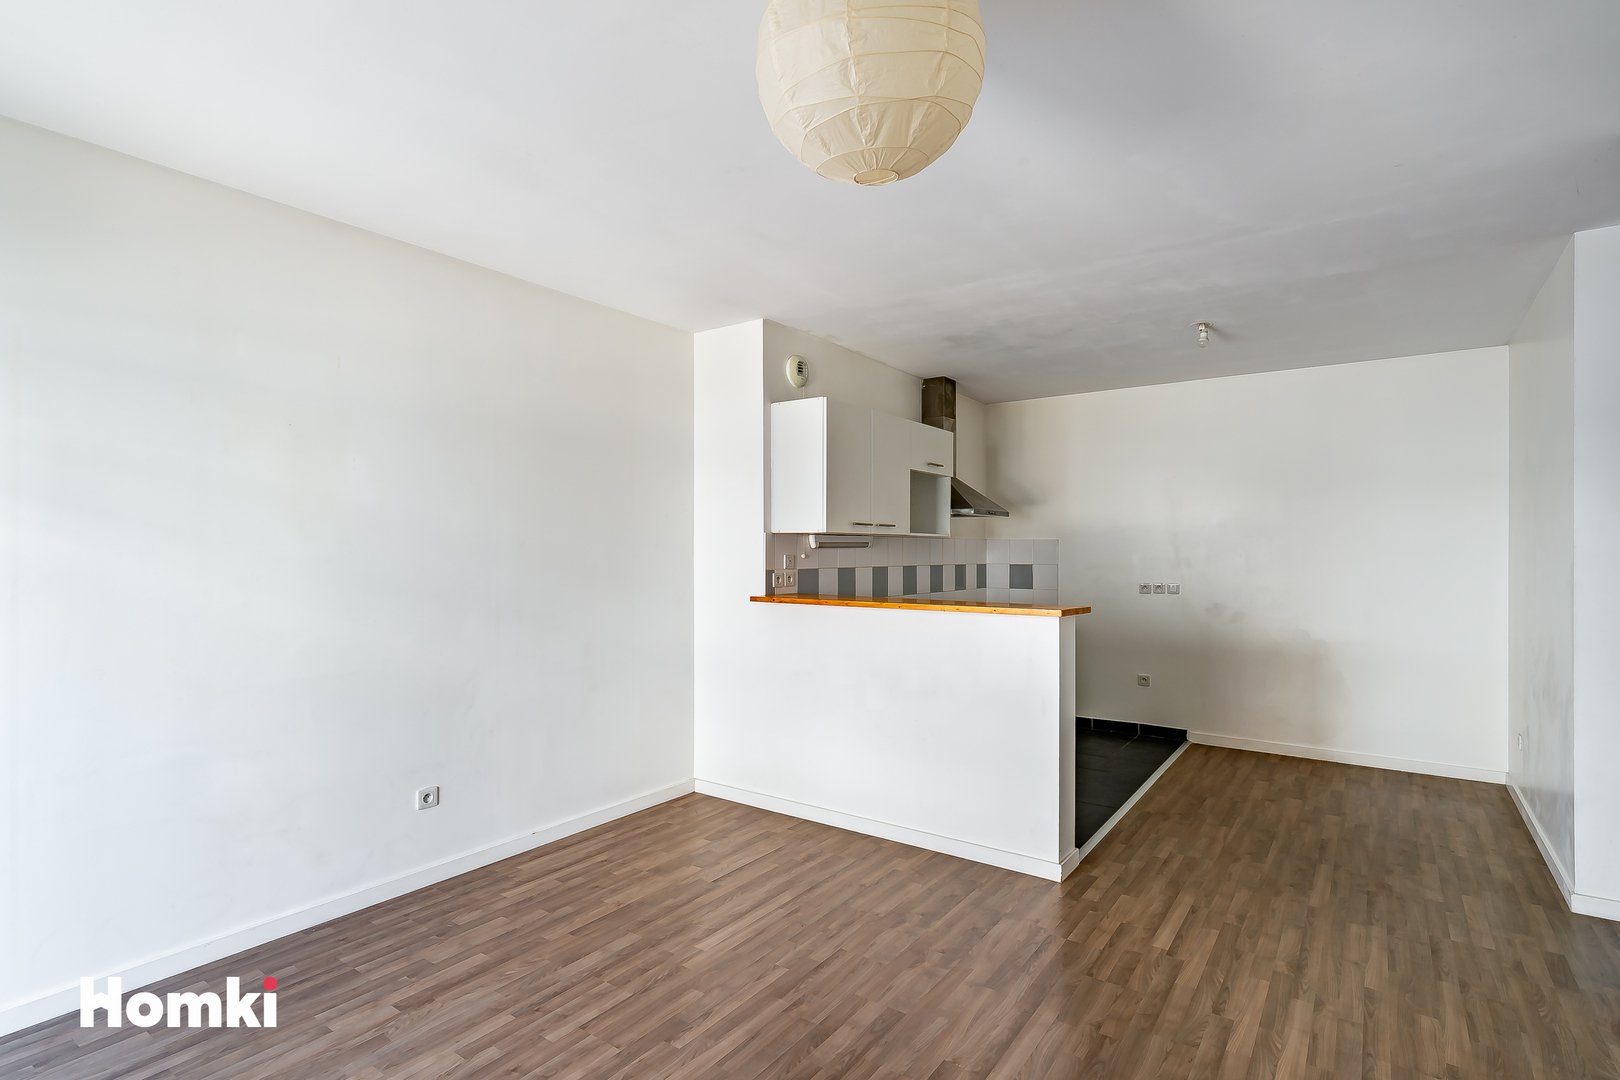 Homki - Vente Appartement  de 61.0 m² à Bordeaux 33300